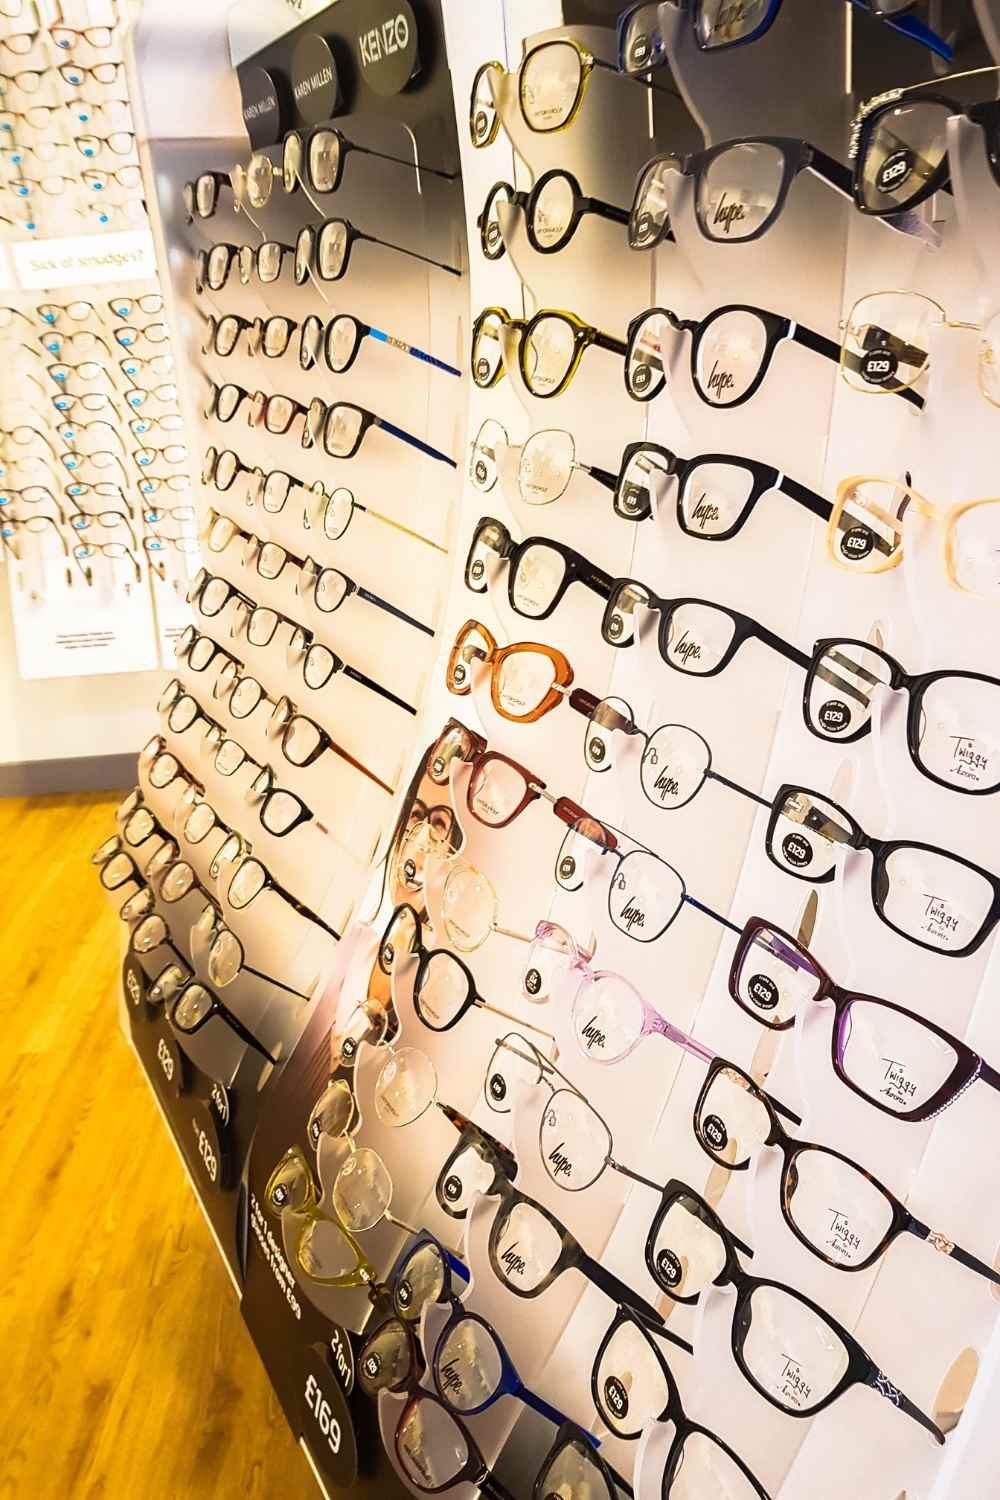 specsavers glasses range